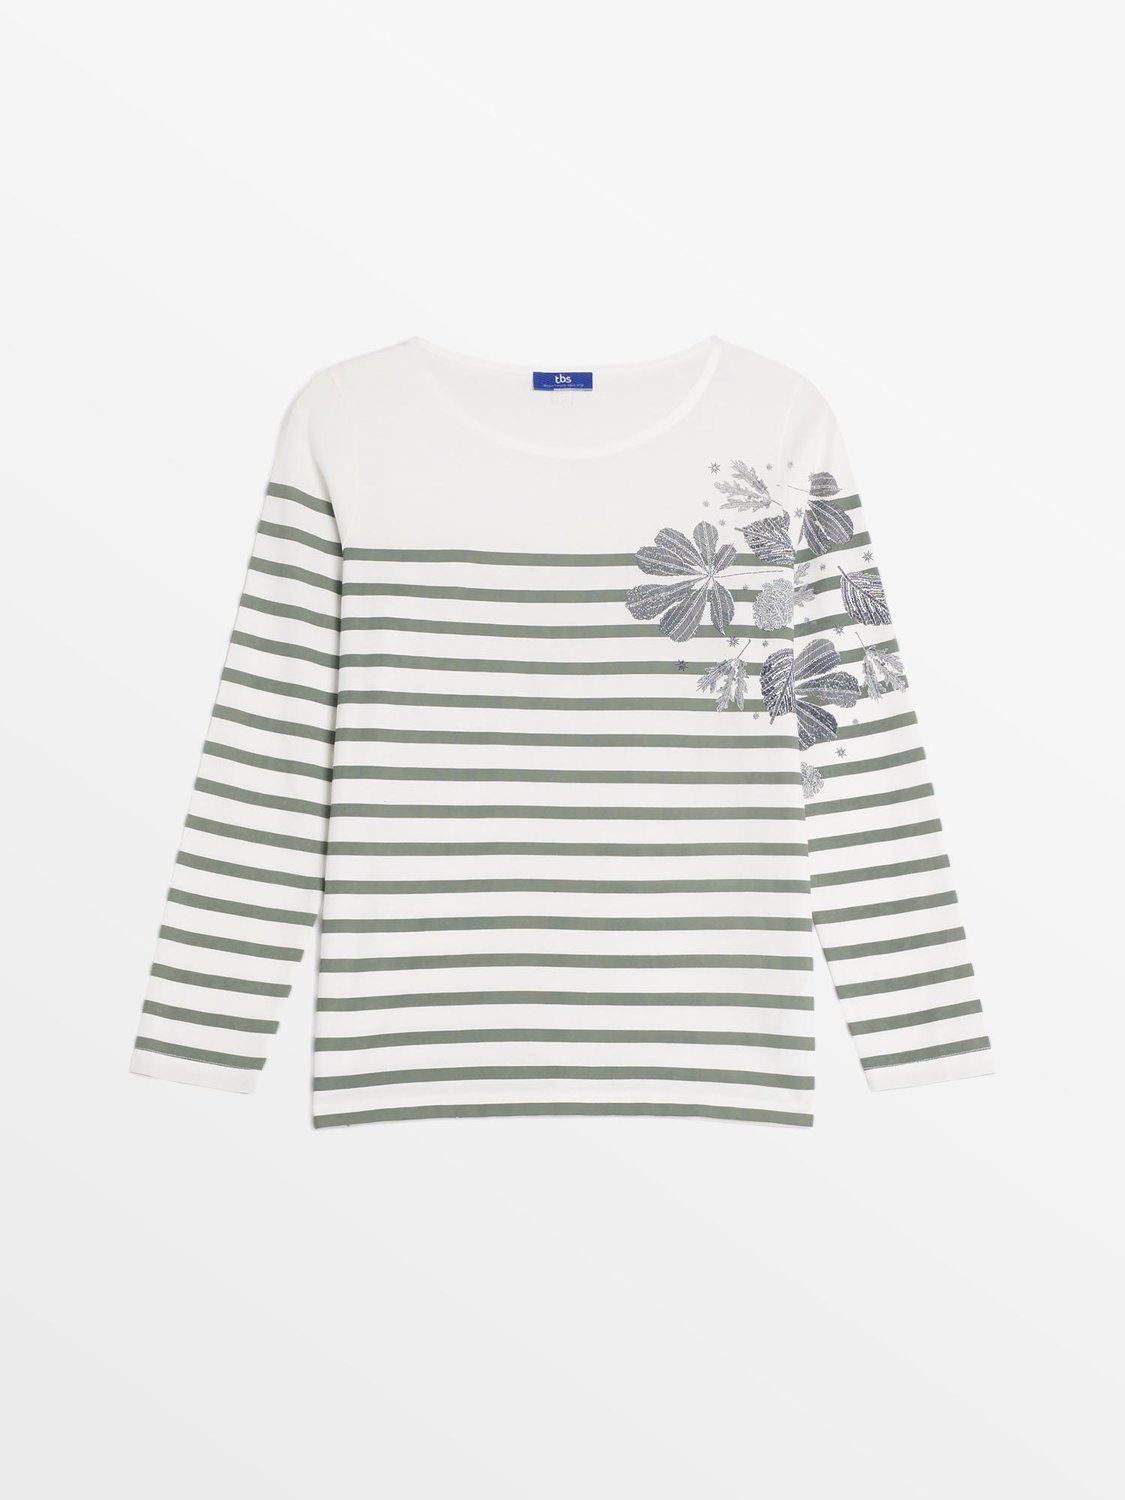 Tee Shirt Marinière Femme Coton Biologique Blanc et Vert